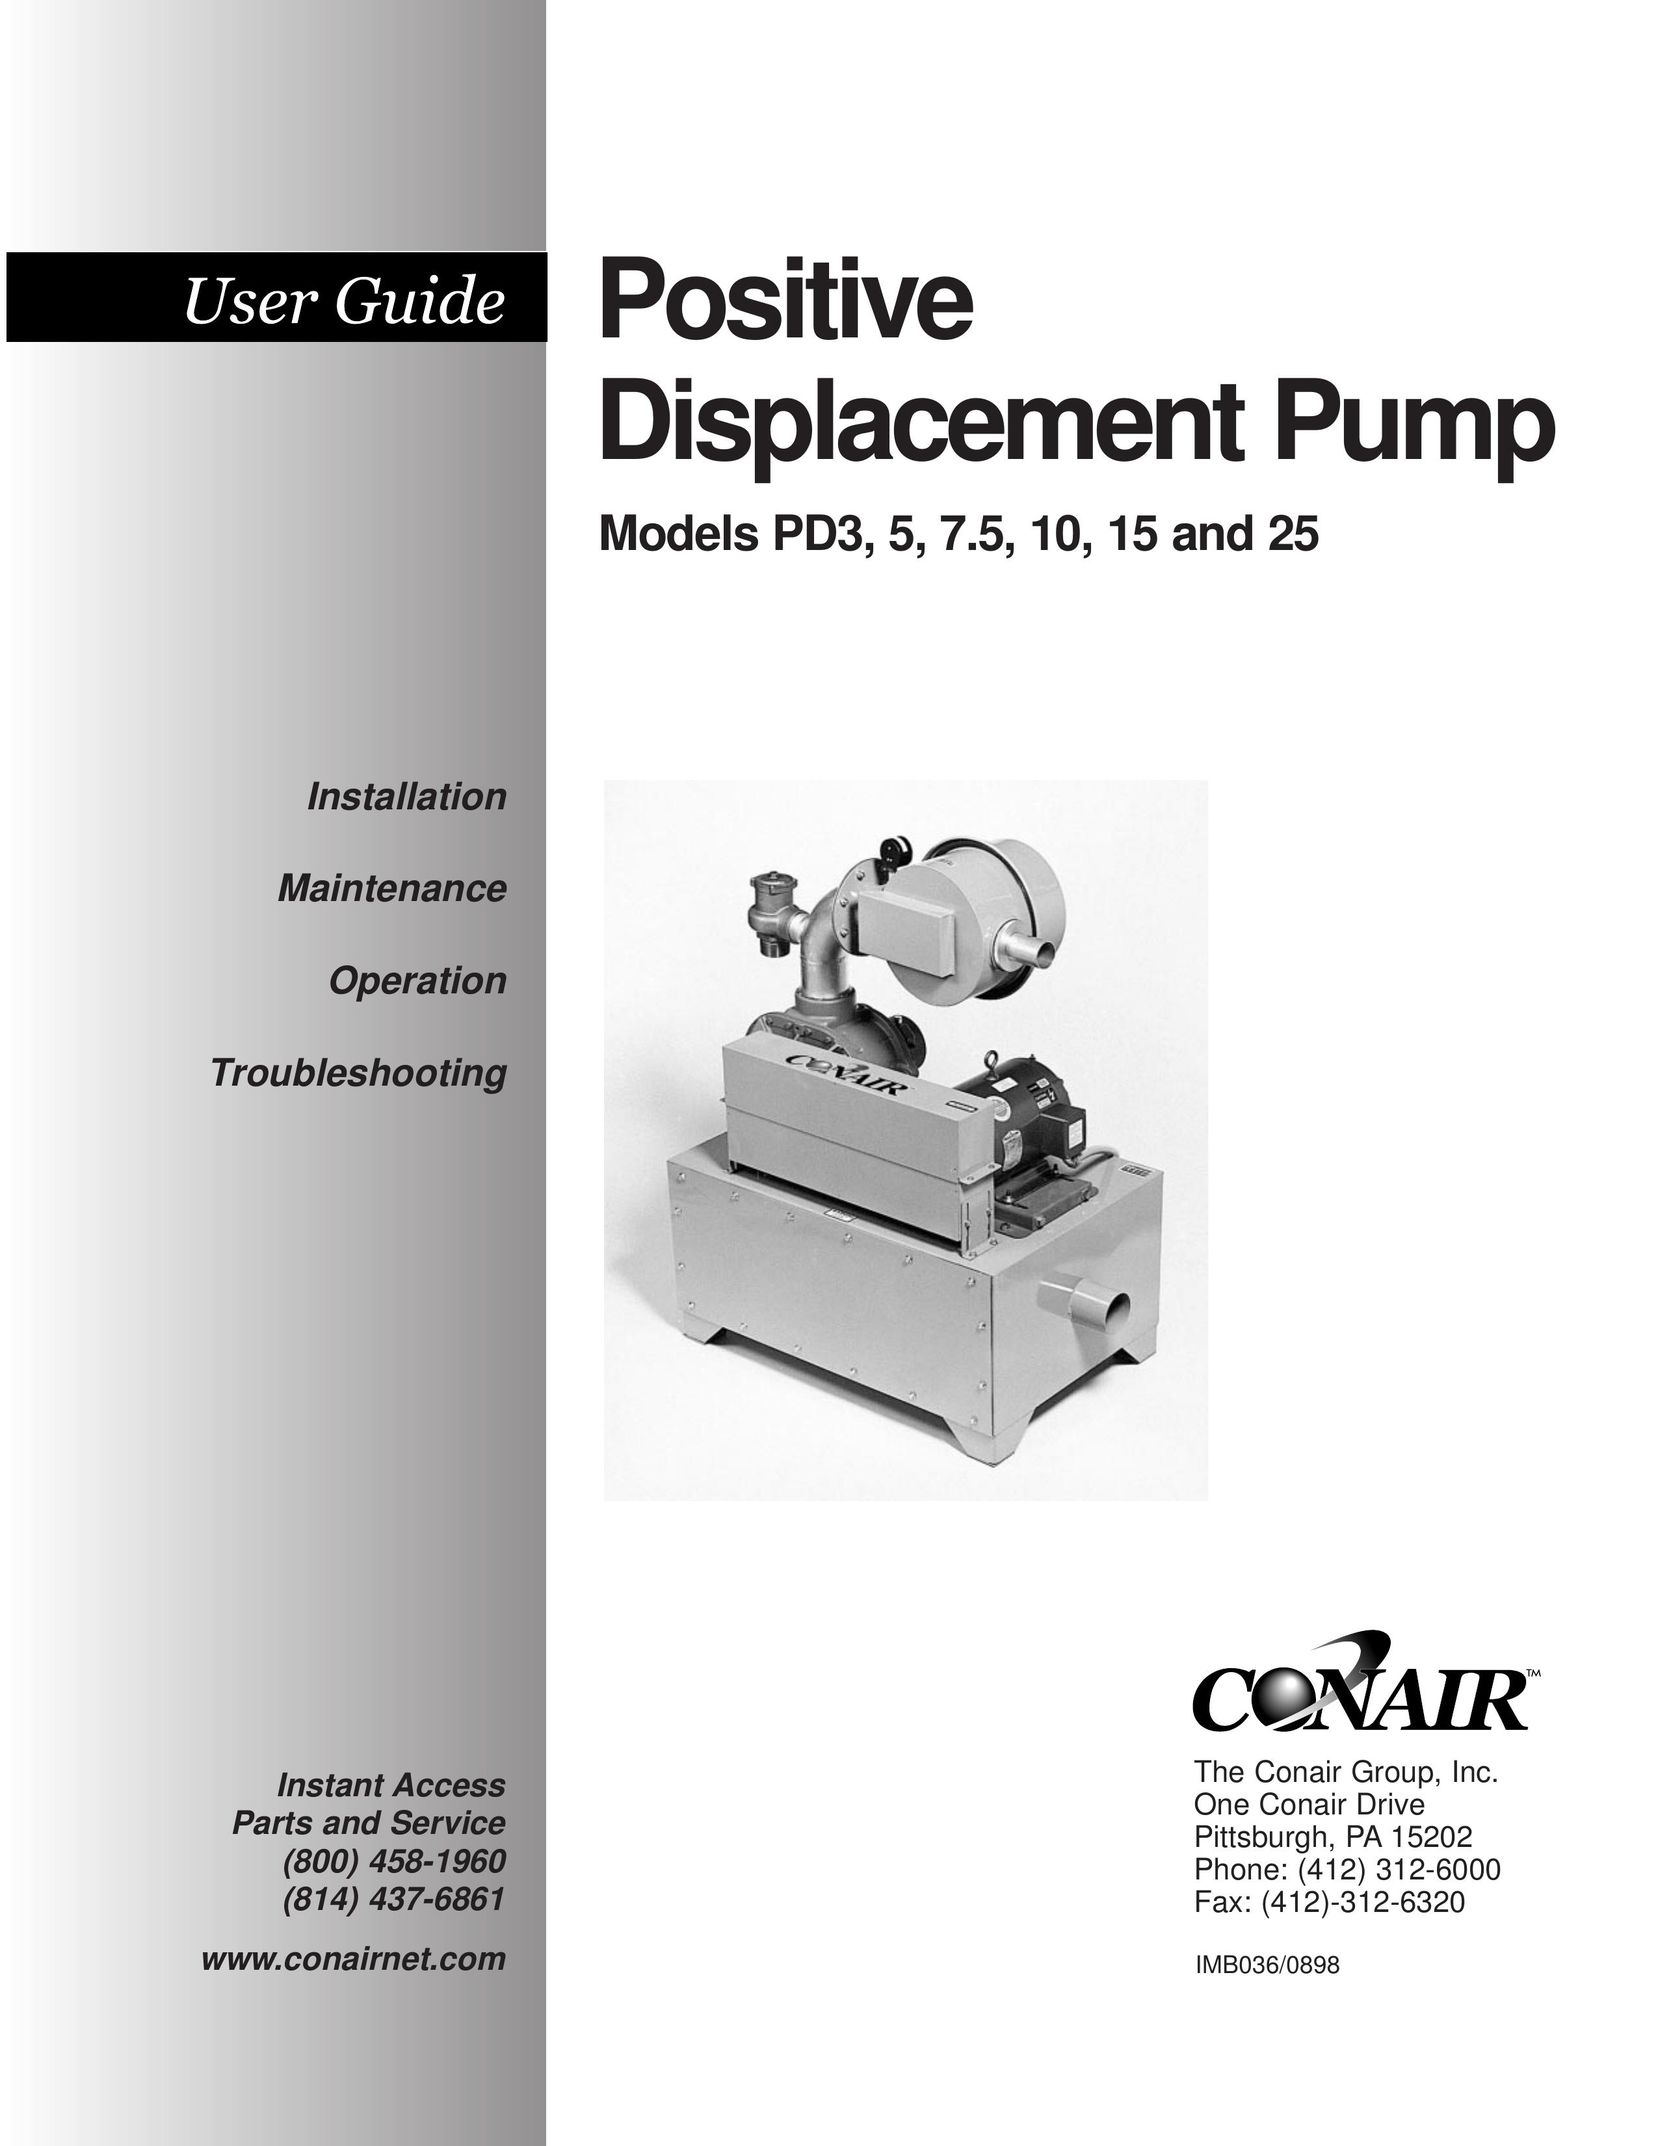 Conair PD3 Heat Pump User Manual